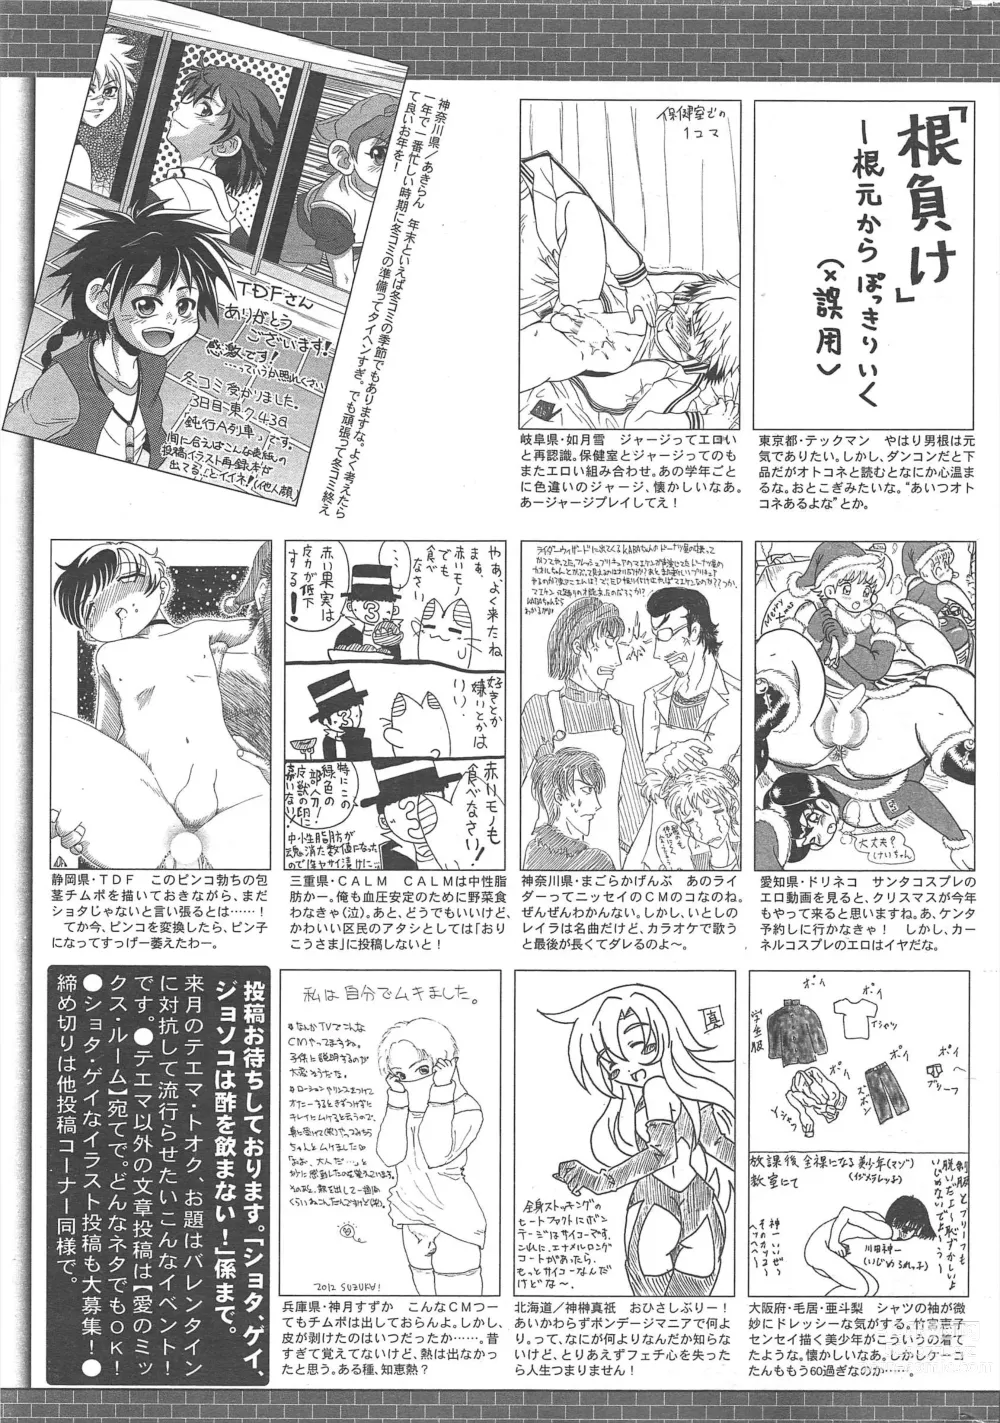 Page 325 of manga Manga Bangaichi 2013-02